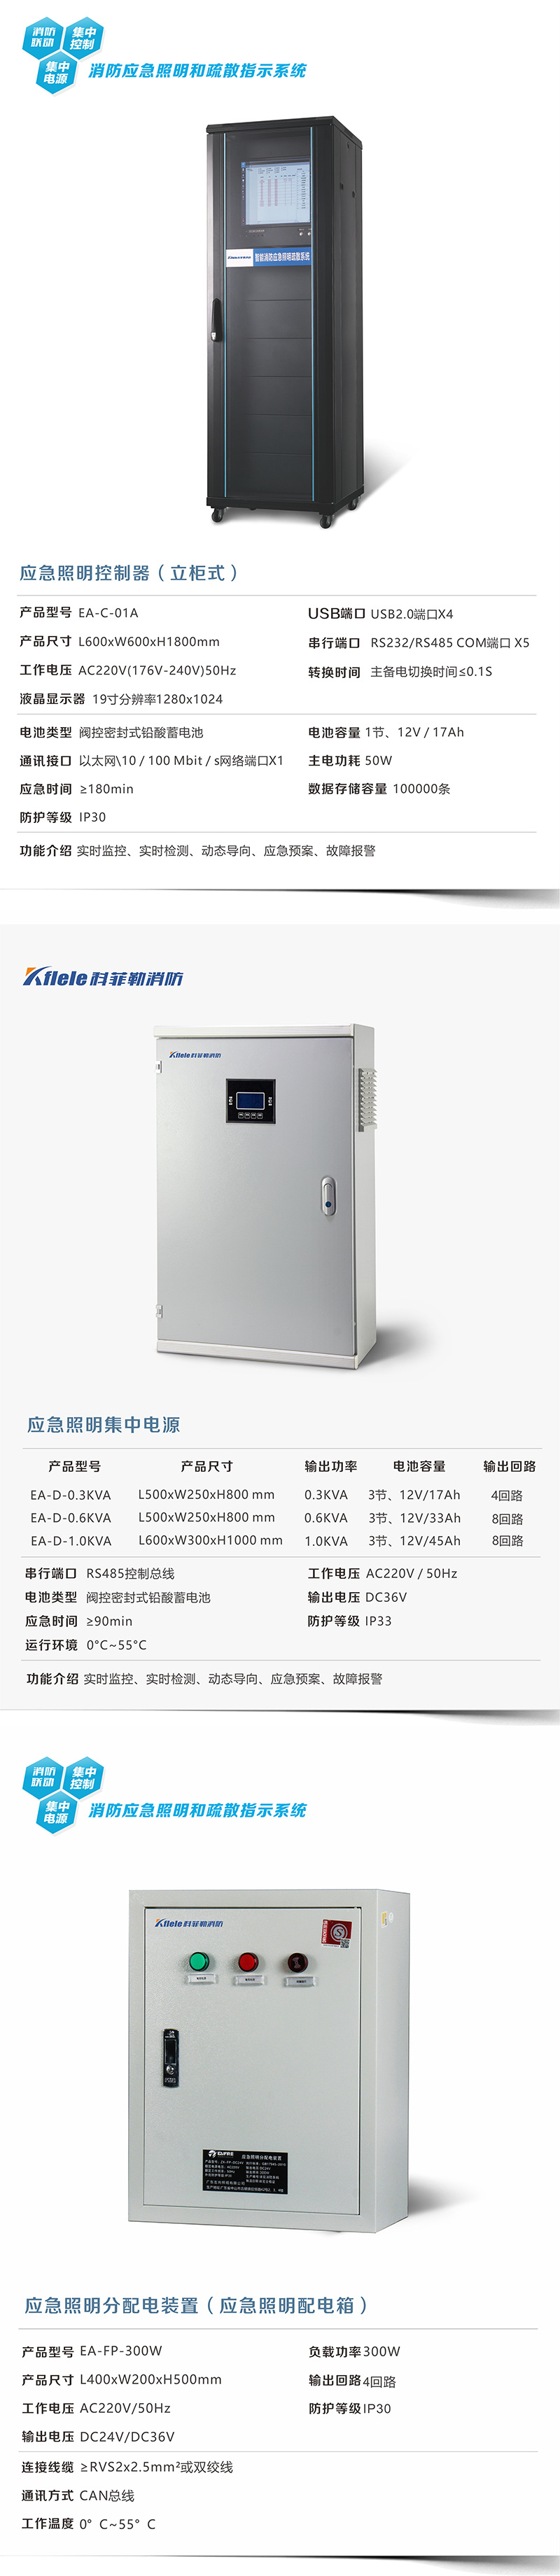 武汉300W应急照明集中电源规格